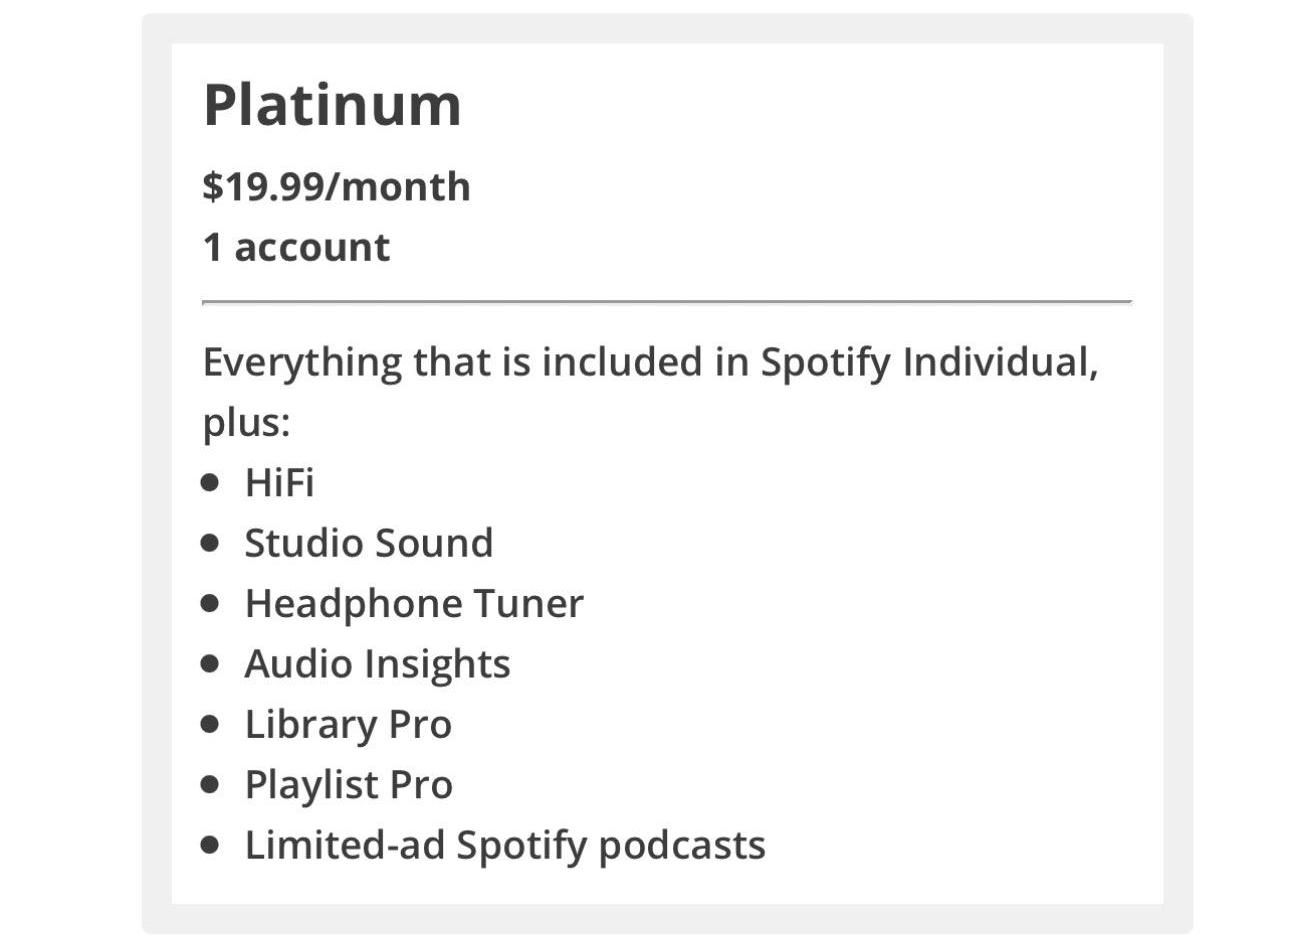 Hi-Fi müzik sevenler için Spotify Platinum üyelik planı geliyor